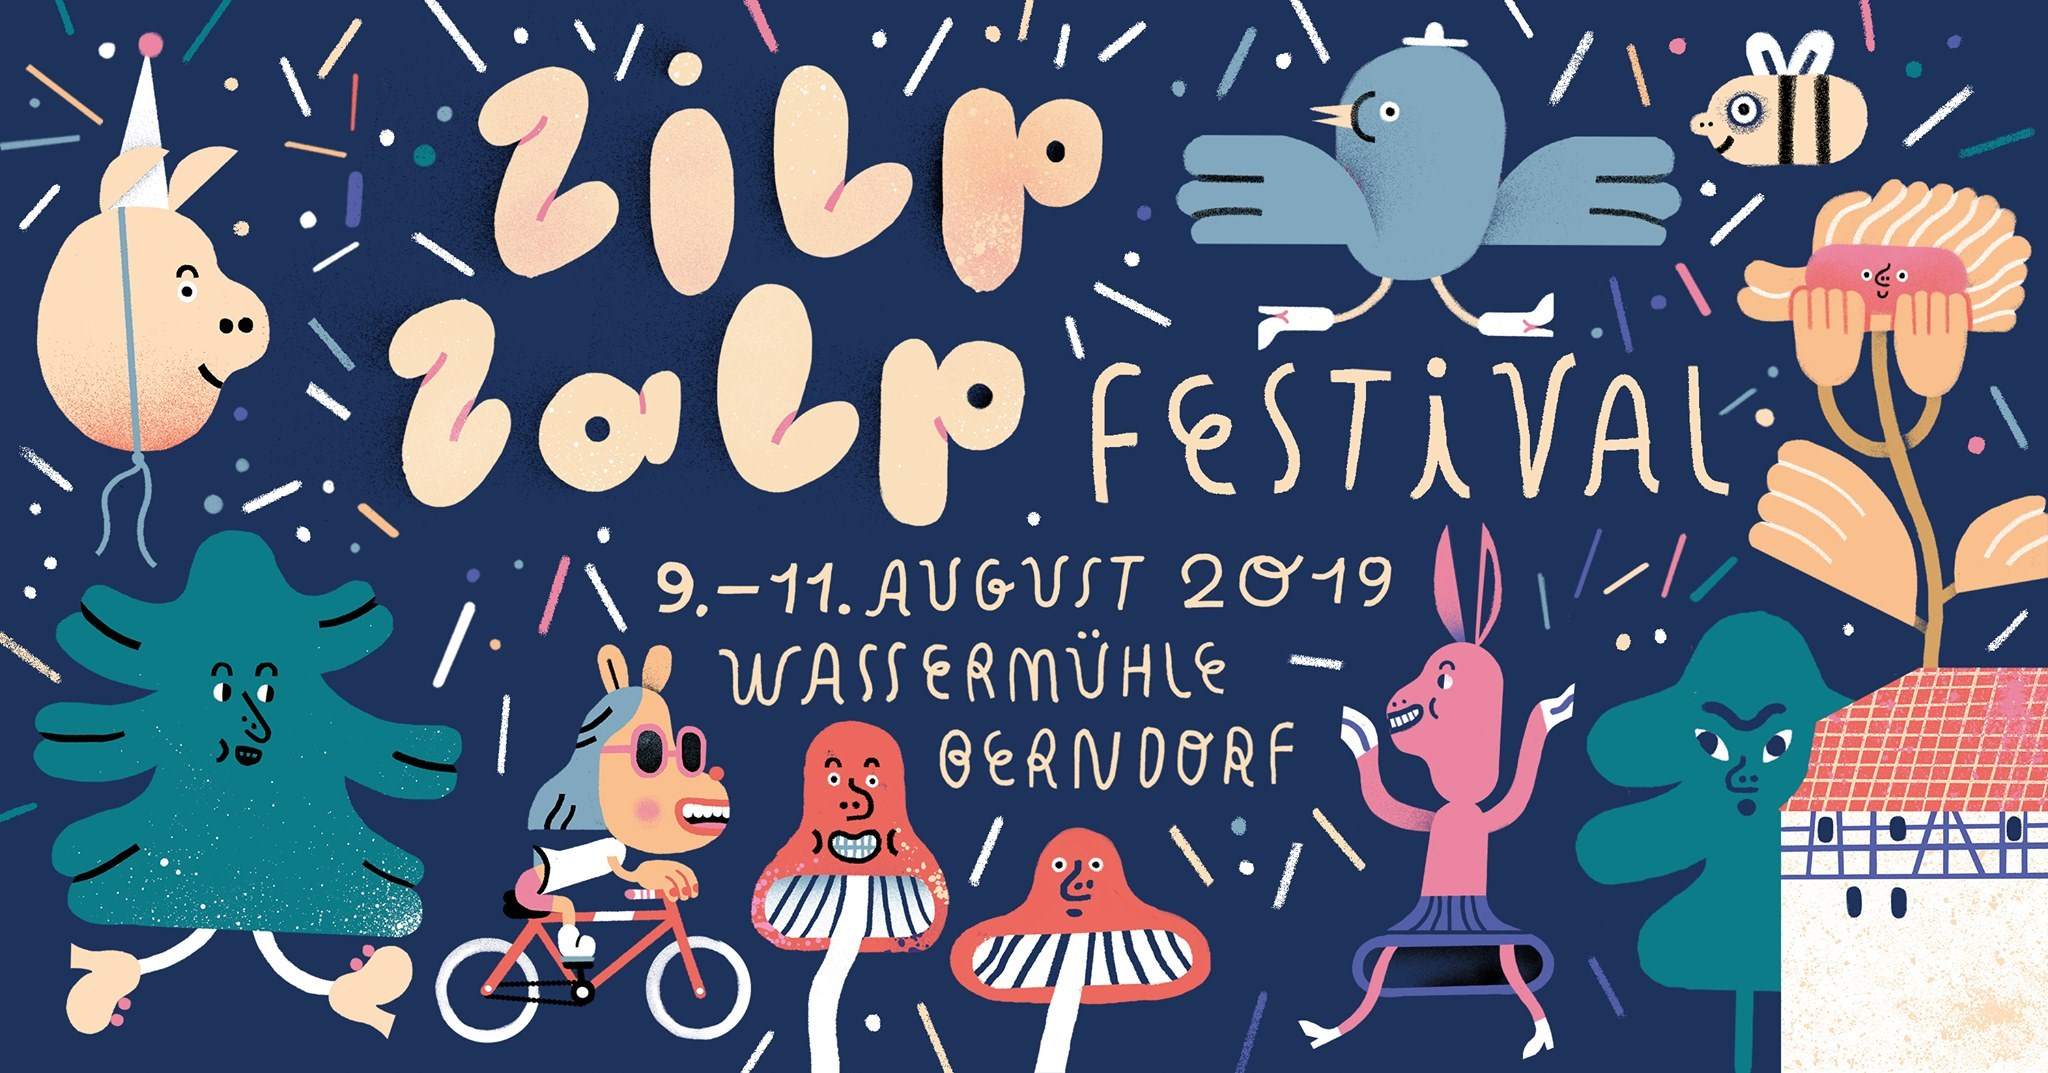 Zilp Zalp Festival 2019 - フライヤー表